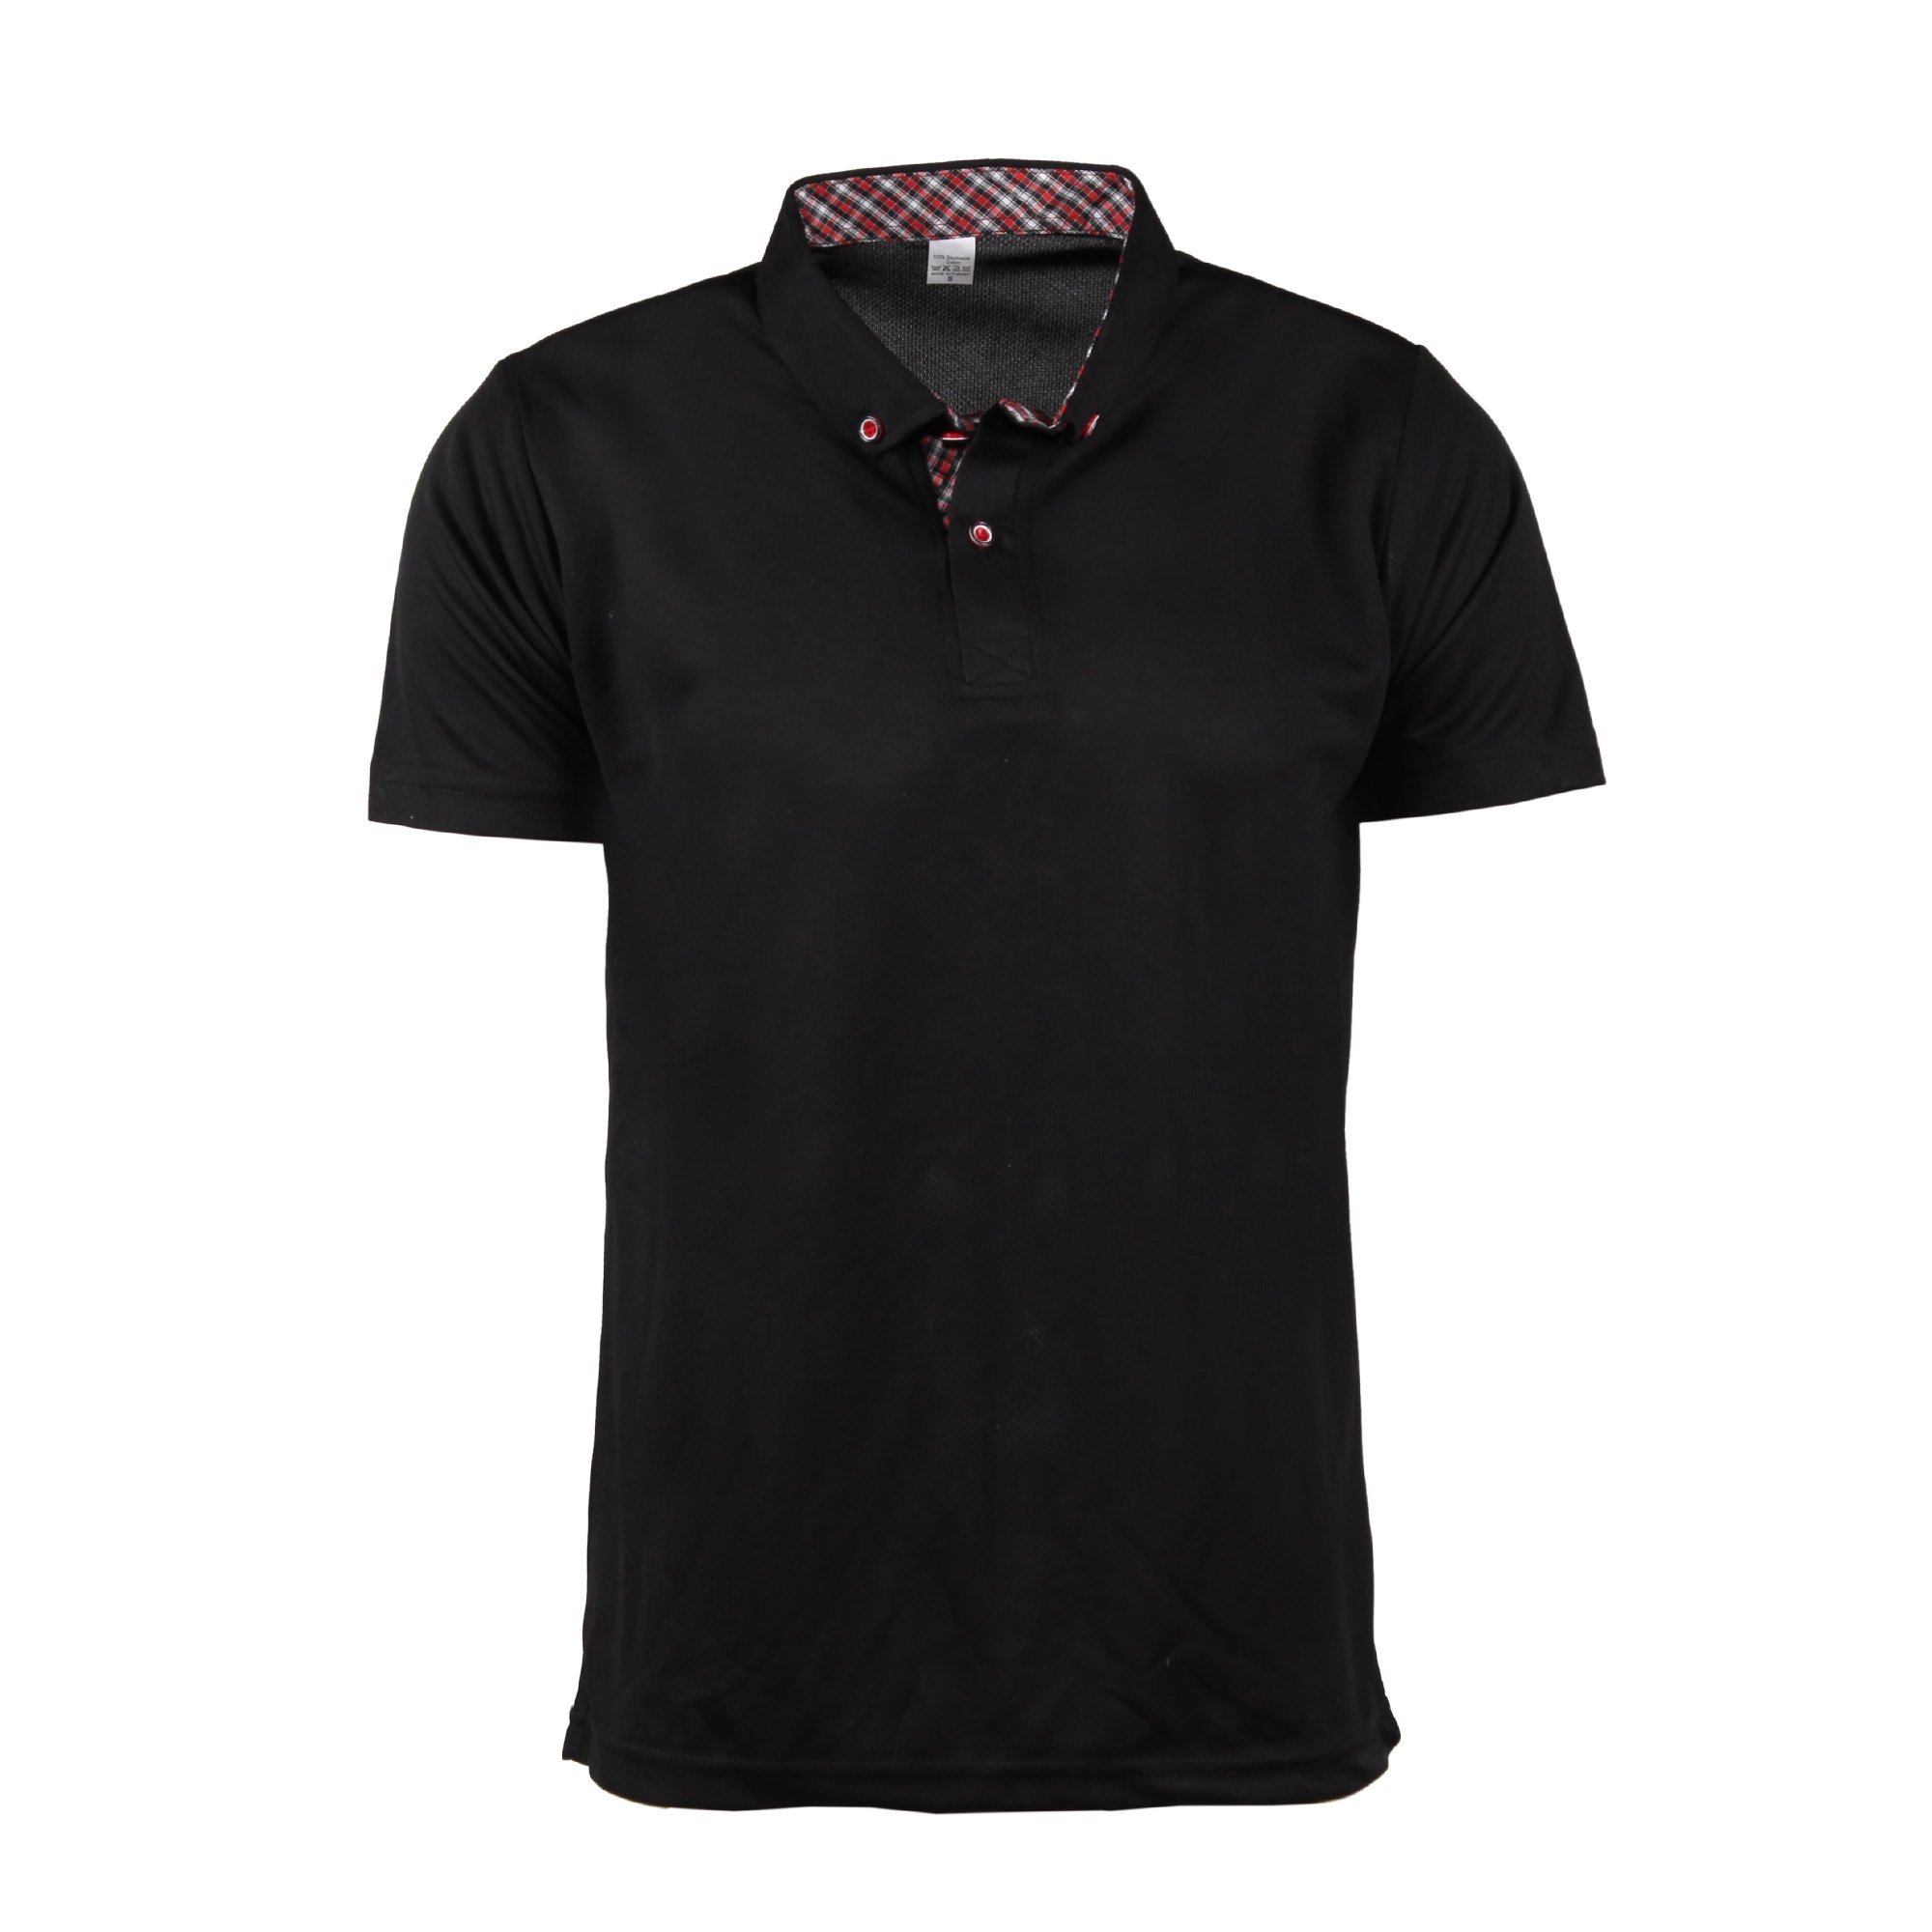 Siyah Gömlek Yaka Dry Touch T-Shirt